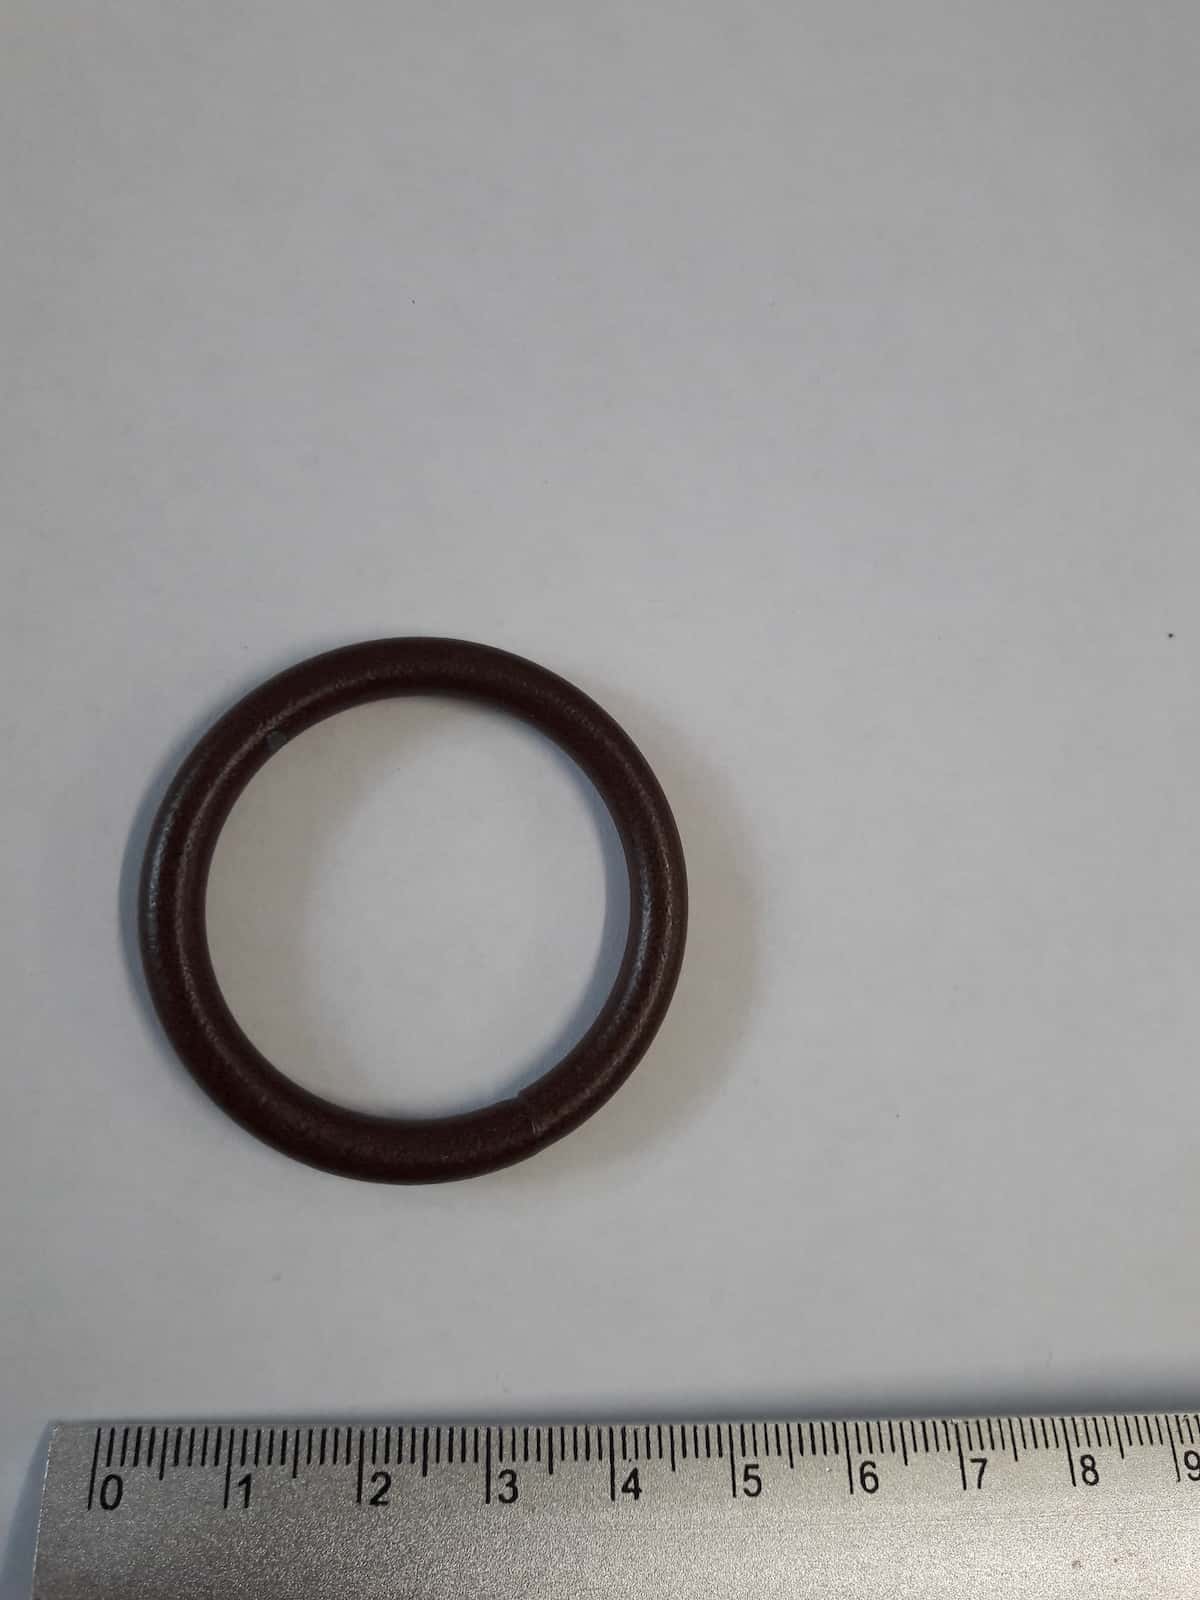 Dromenvanger metalen ring 45 x 35 mm roest per 7 stuks